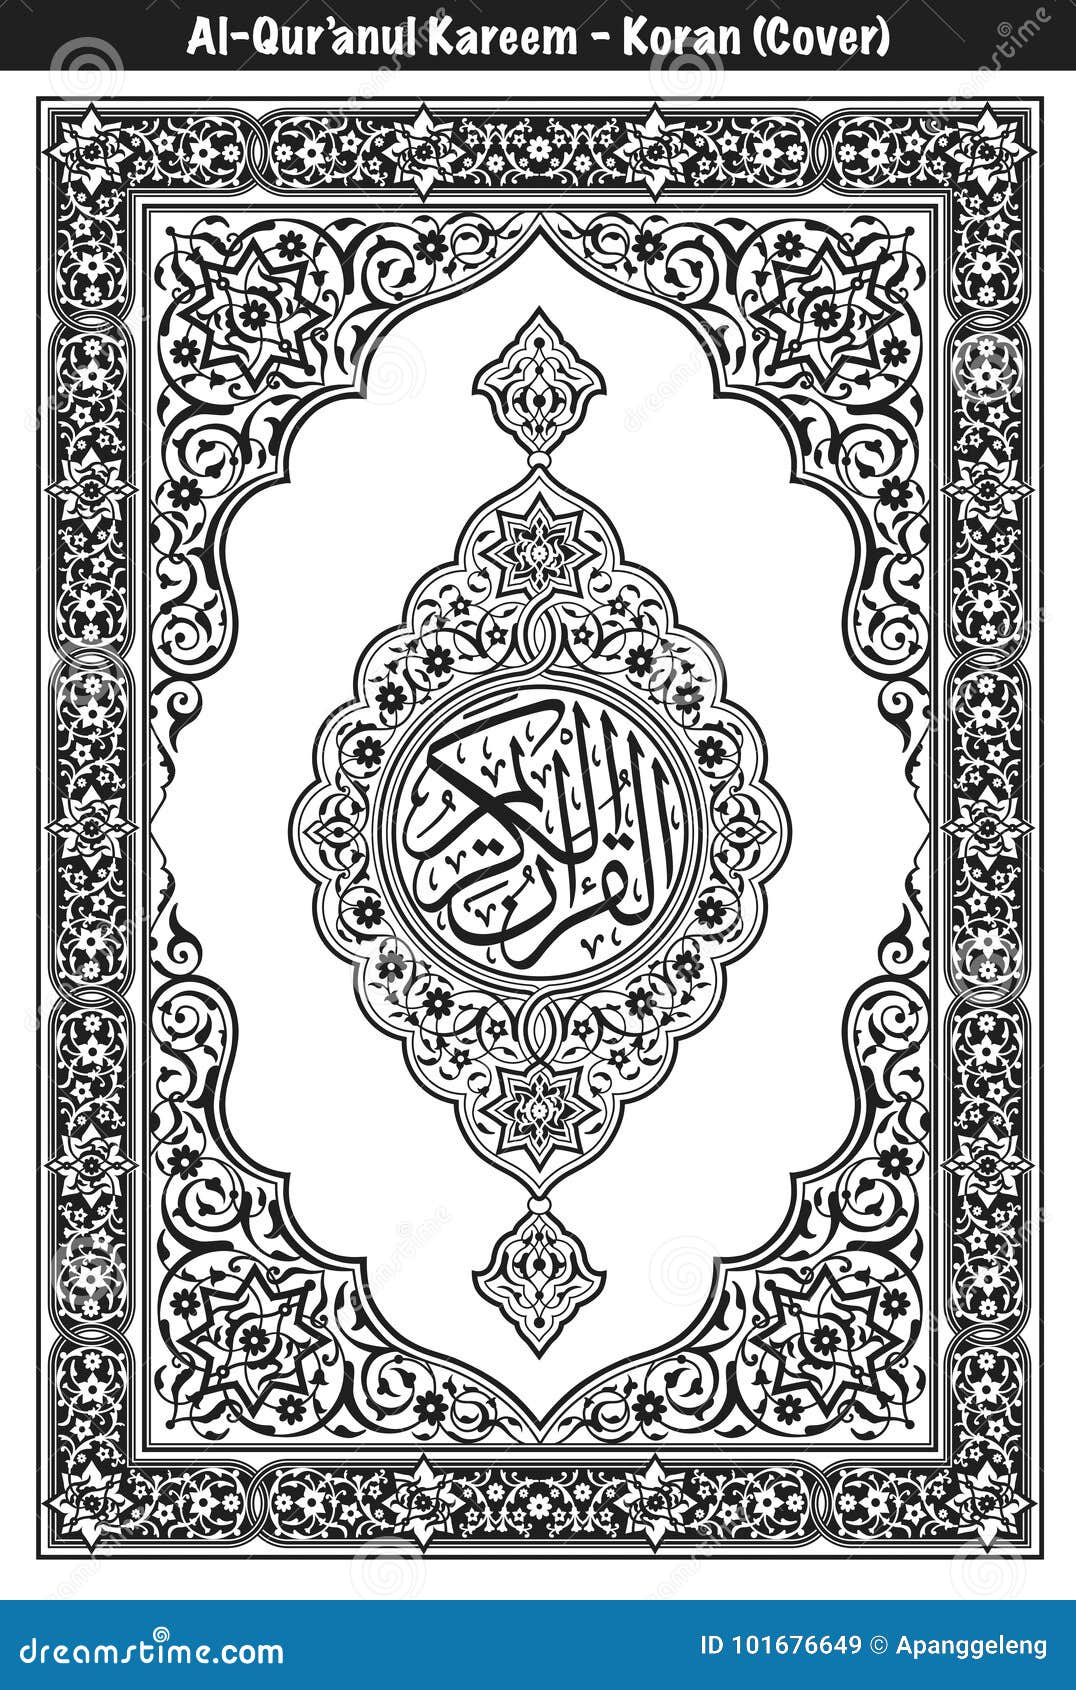 Quran Cover Design - Nusagates